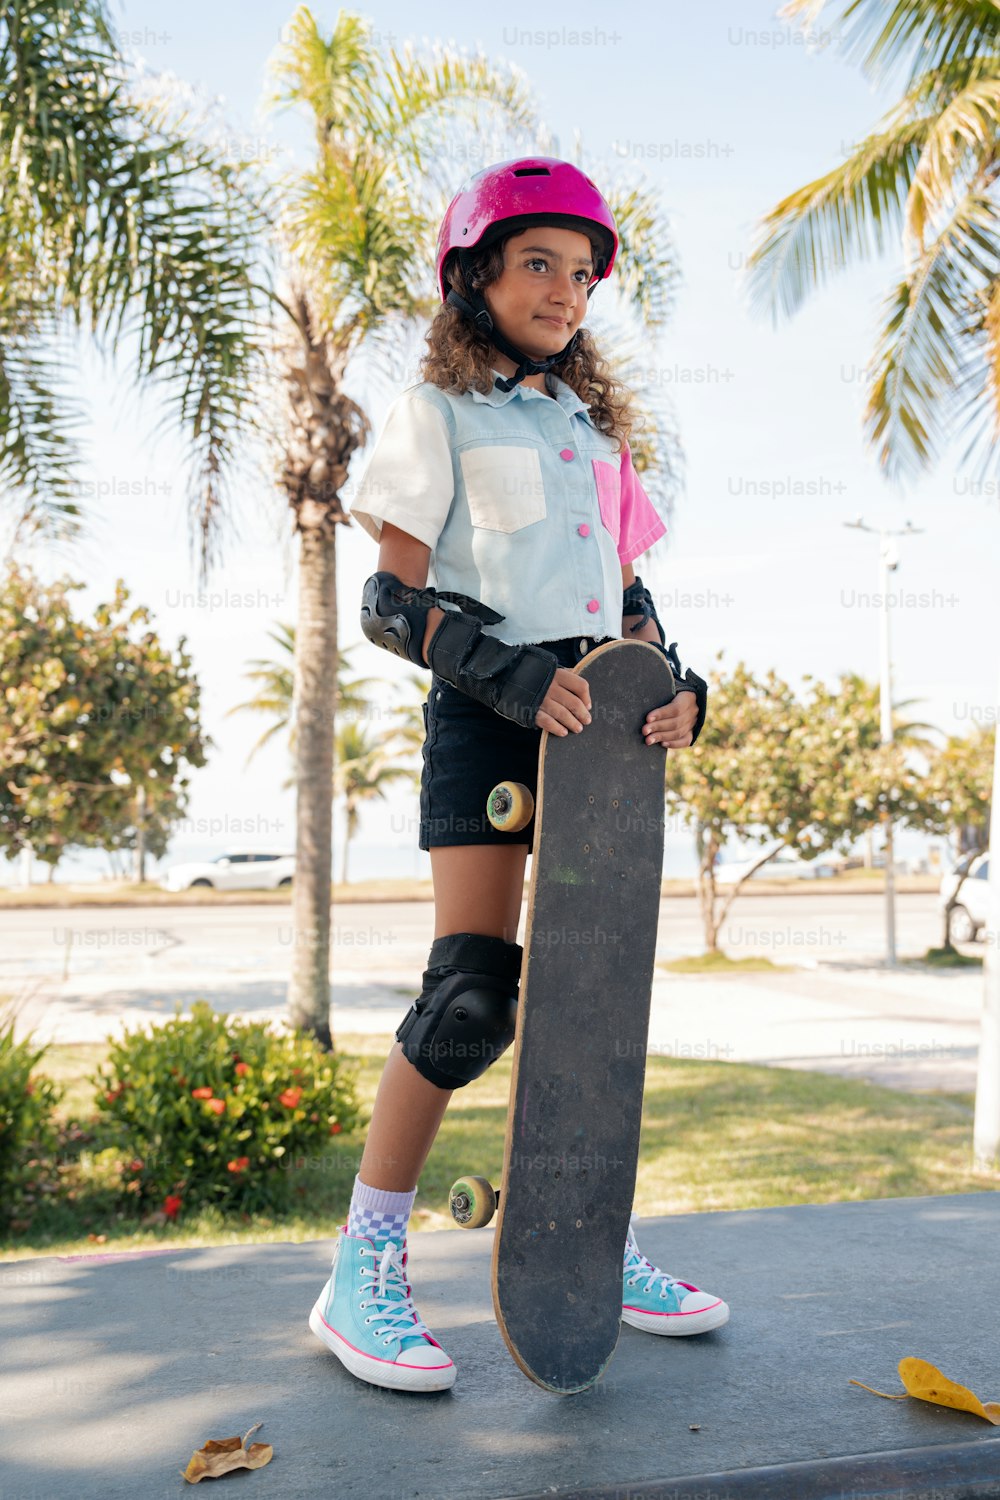 una joven sosteniendo una patineta en una acera